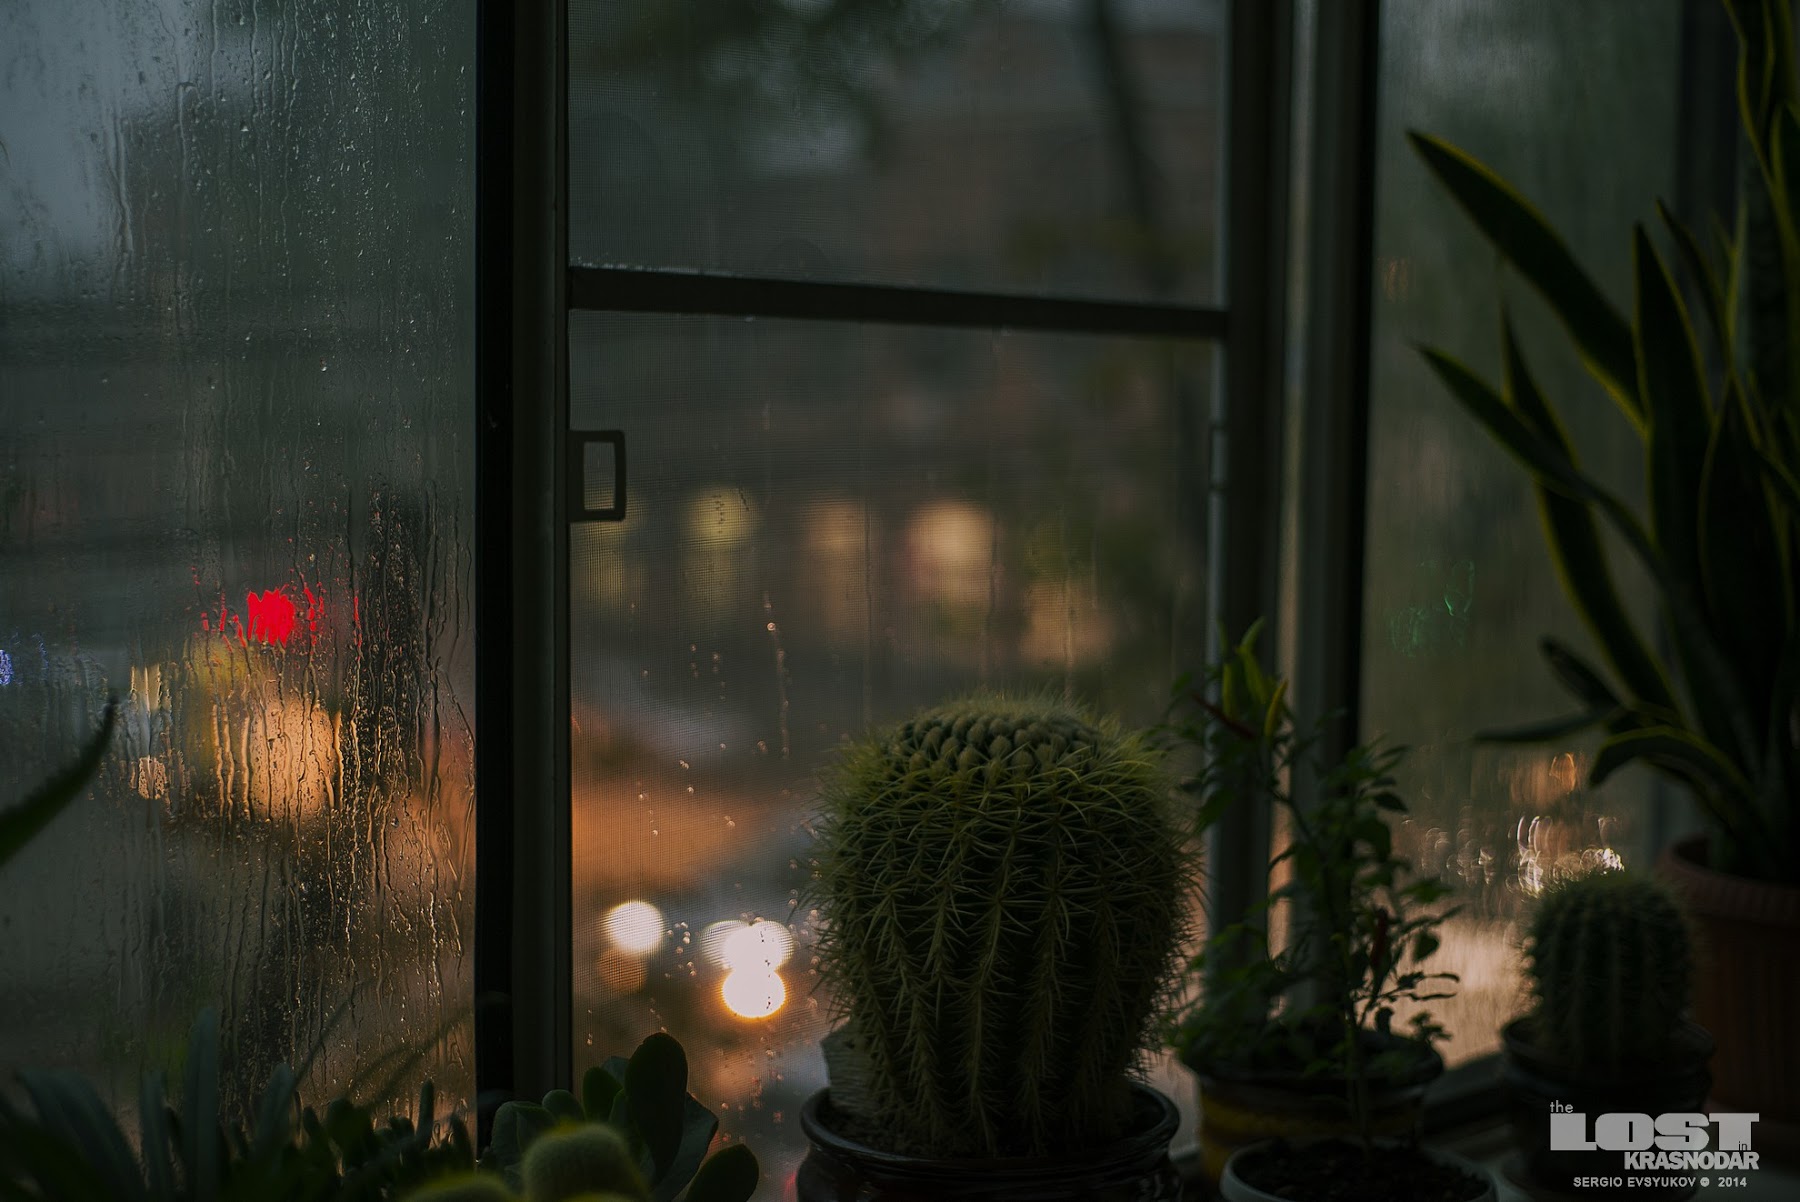 Ilgiz за окном дождь. Дождь за окном. Дождь в окне. Кактус на окне. Дождливый вид из окна.